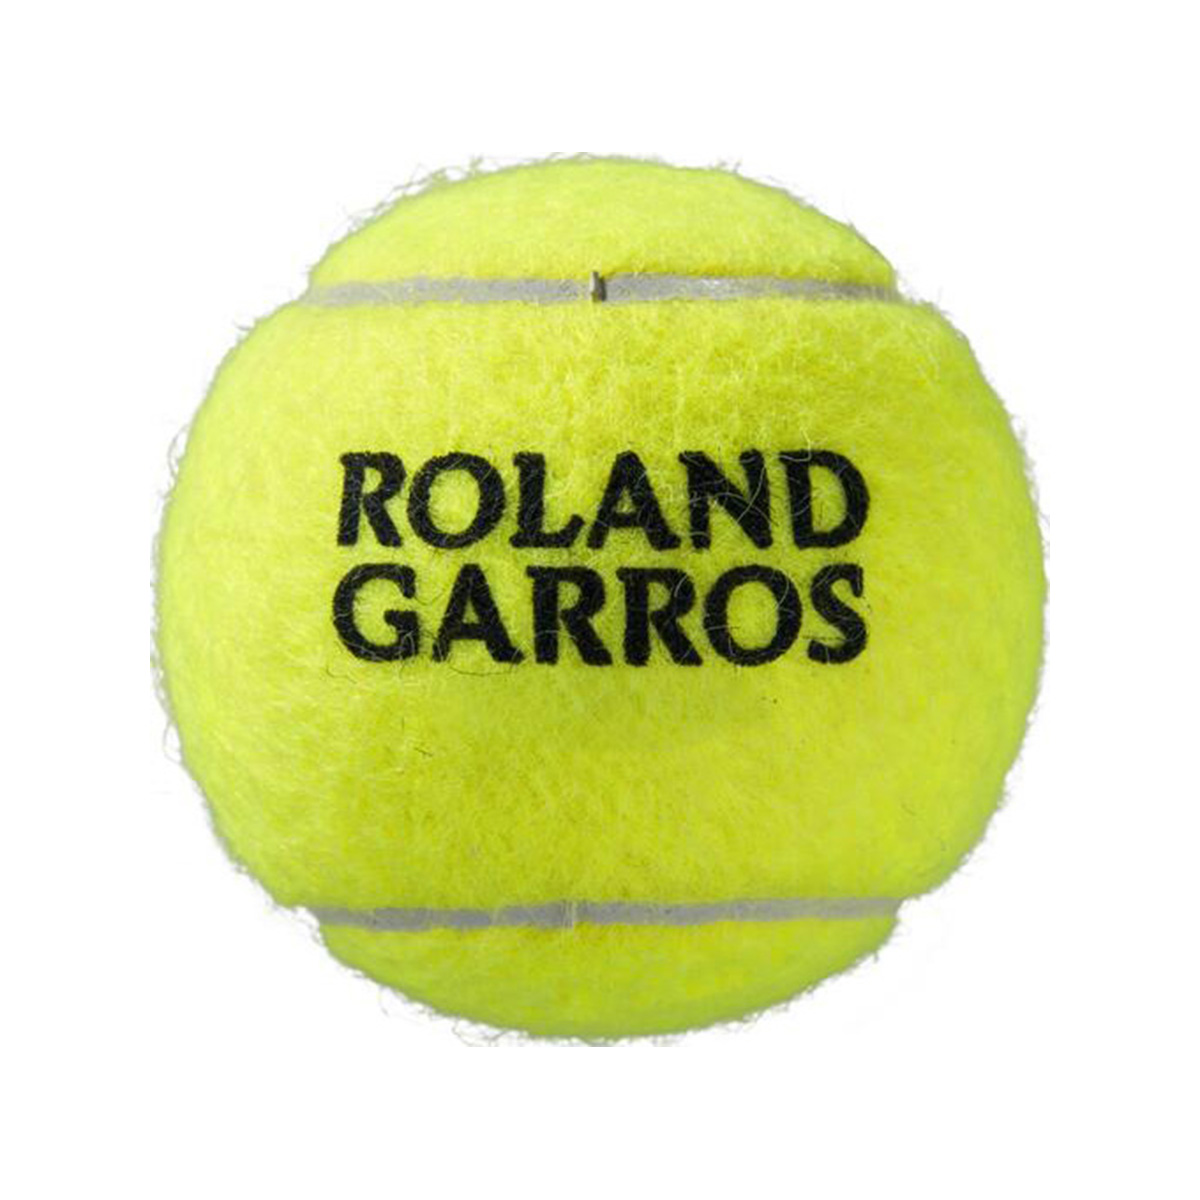 фото Теннисный мяч wilson roland garros clay 3 шт yellow